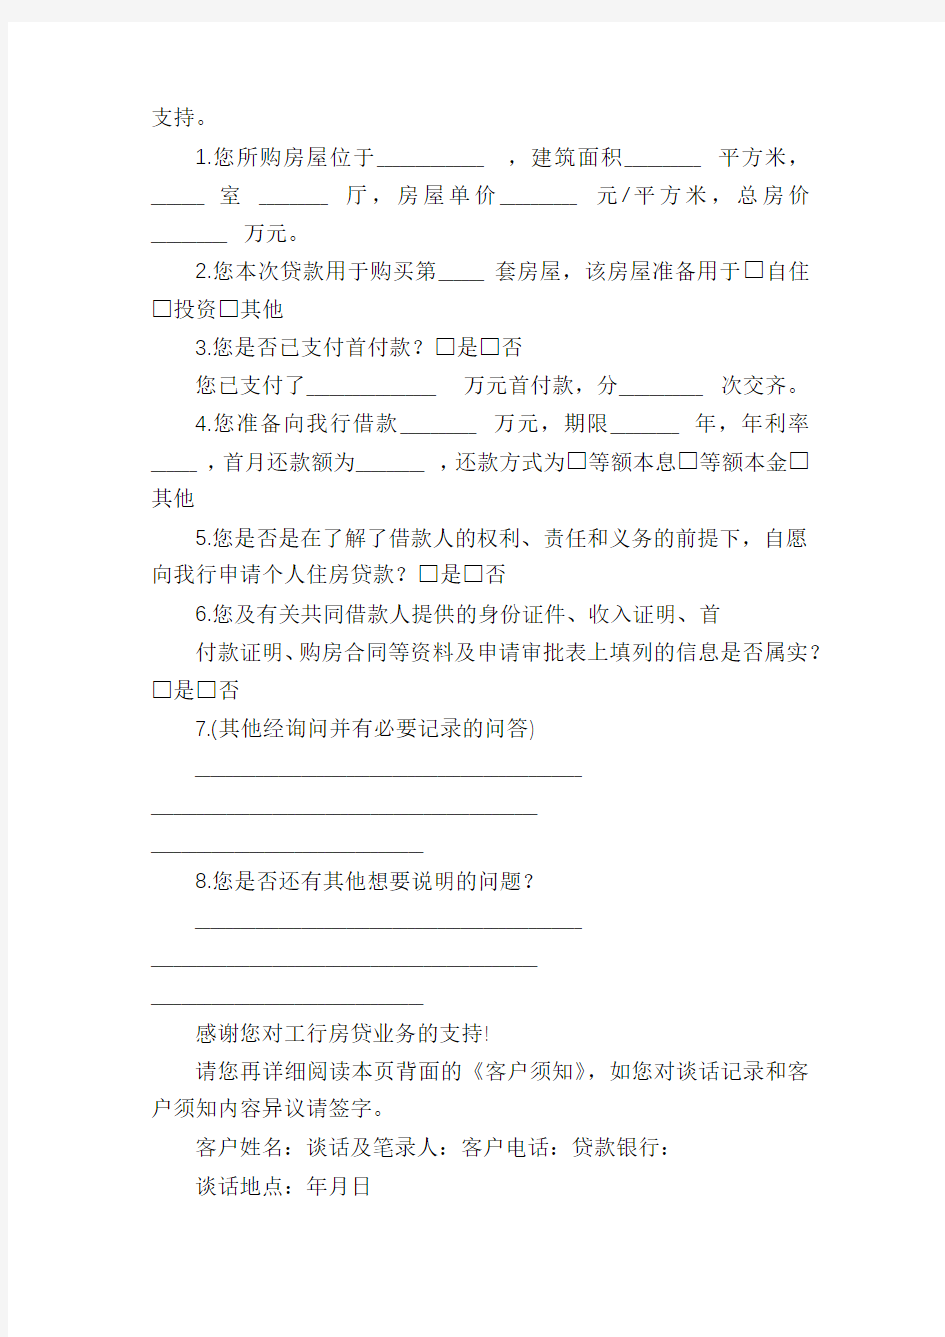 中国工商银行个人住房贷款申请审批表